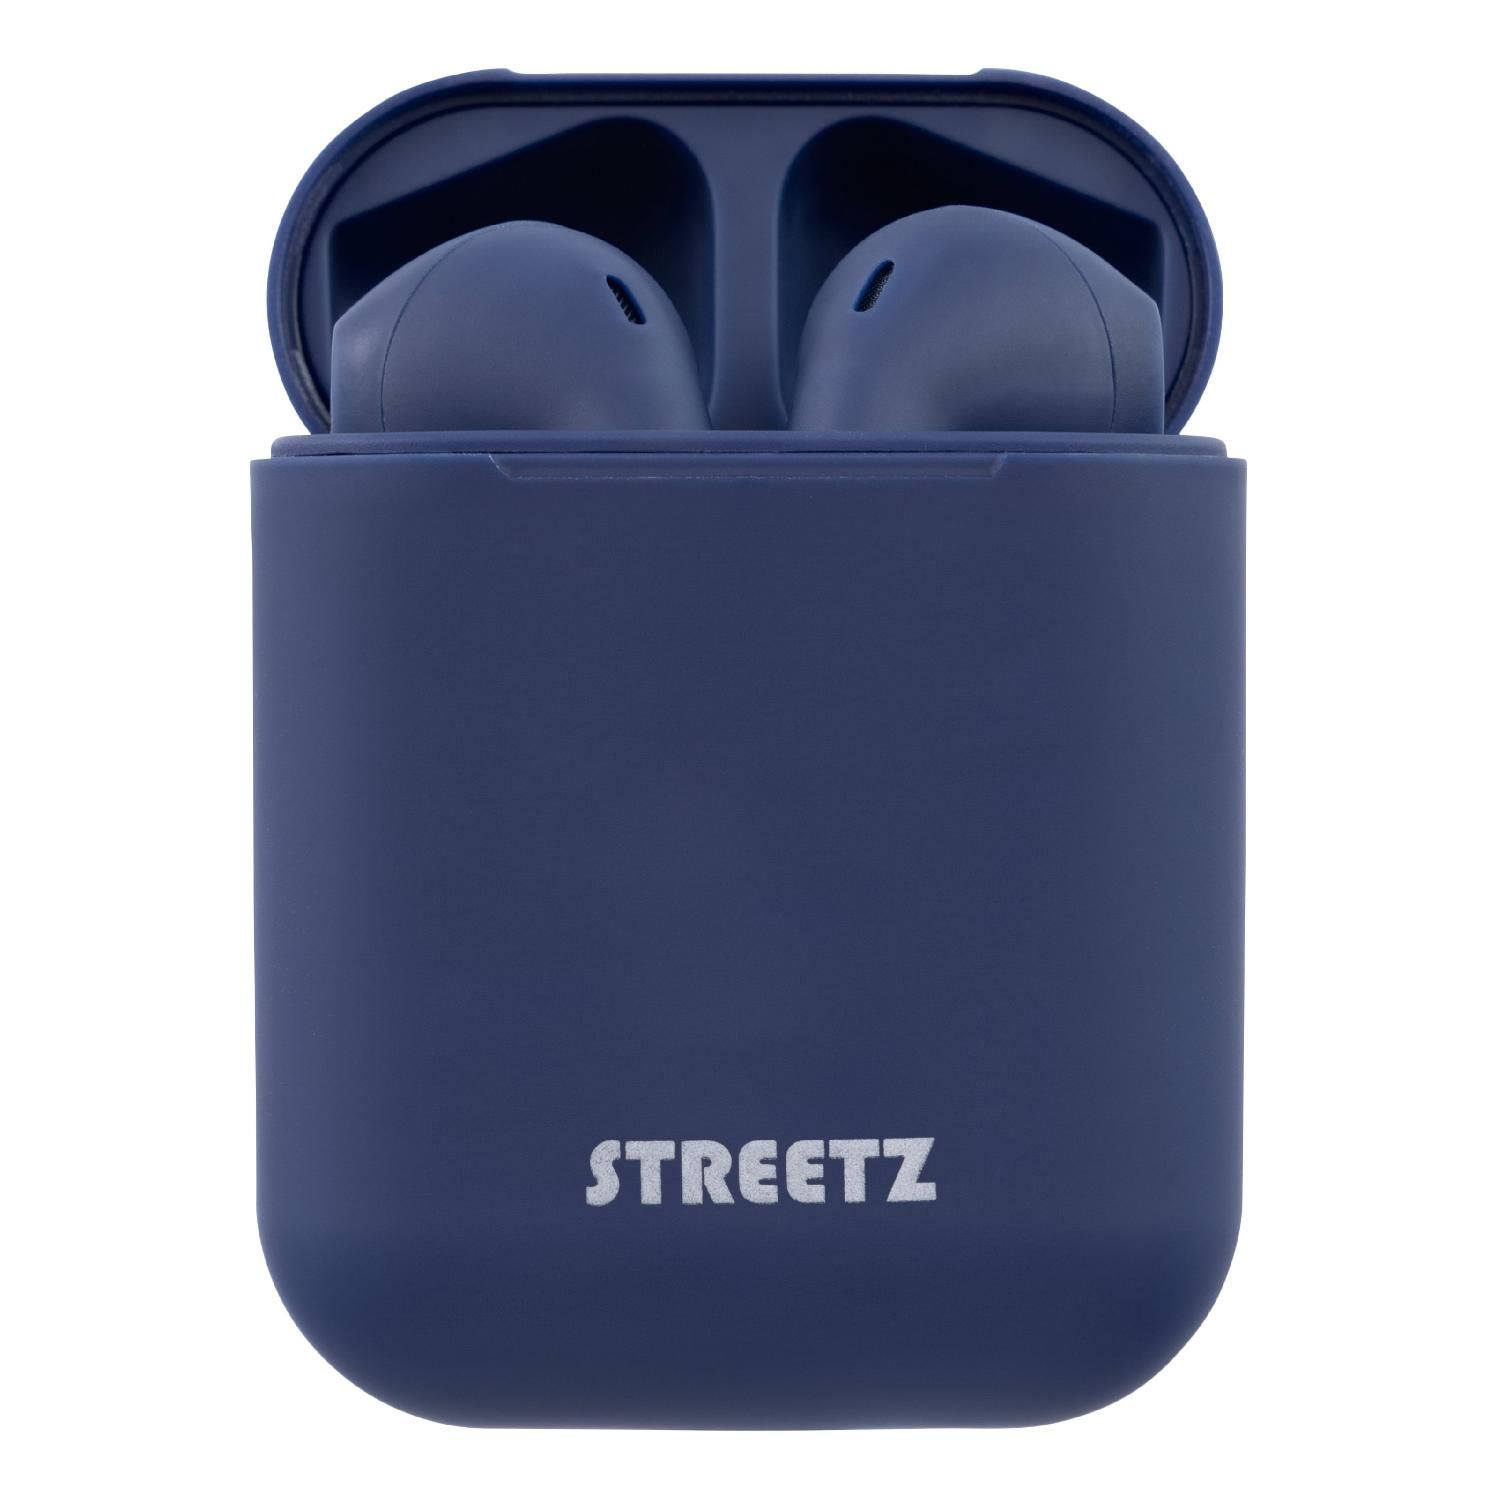 STREETZ TWS Bluetooth In-Ear Kopfhörer, blau Kopfhörer In-ear